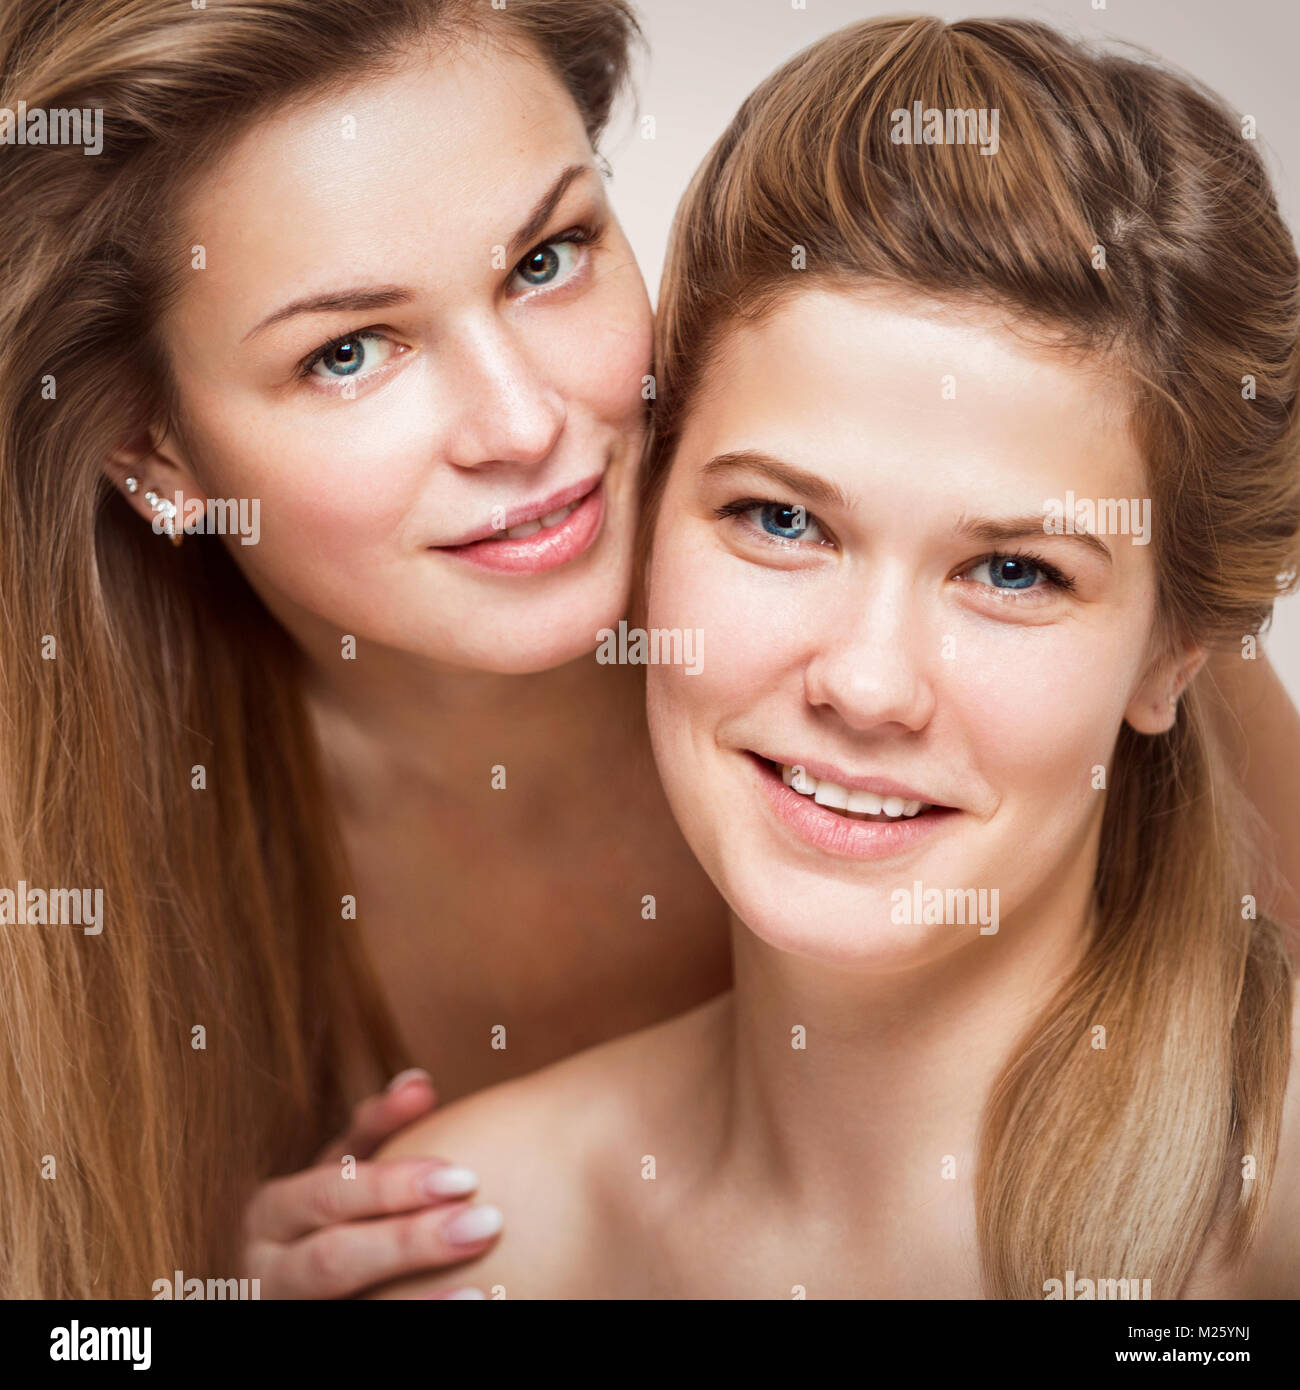 Portrait of two beautiful young smiling women closeup Stock Photo